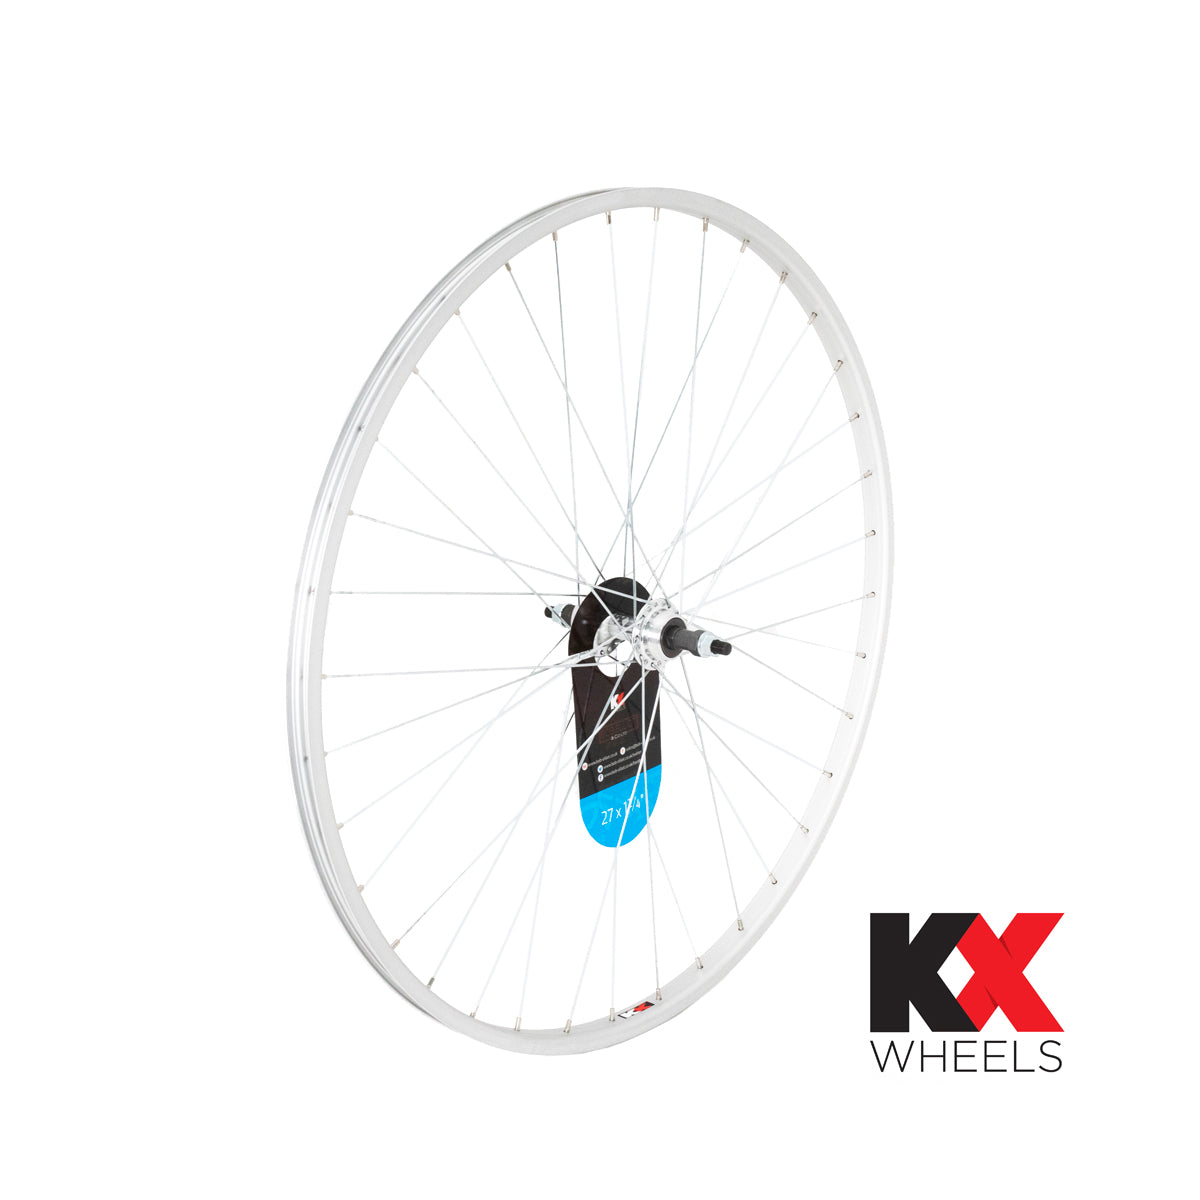 KX Wheels 27x1 1/4" Single Wall Solid Axle Screw On 27 Inch Rear Bike Wheel